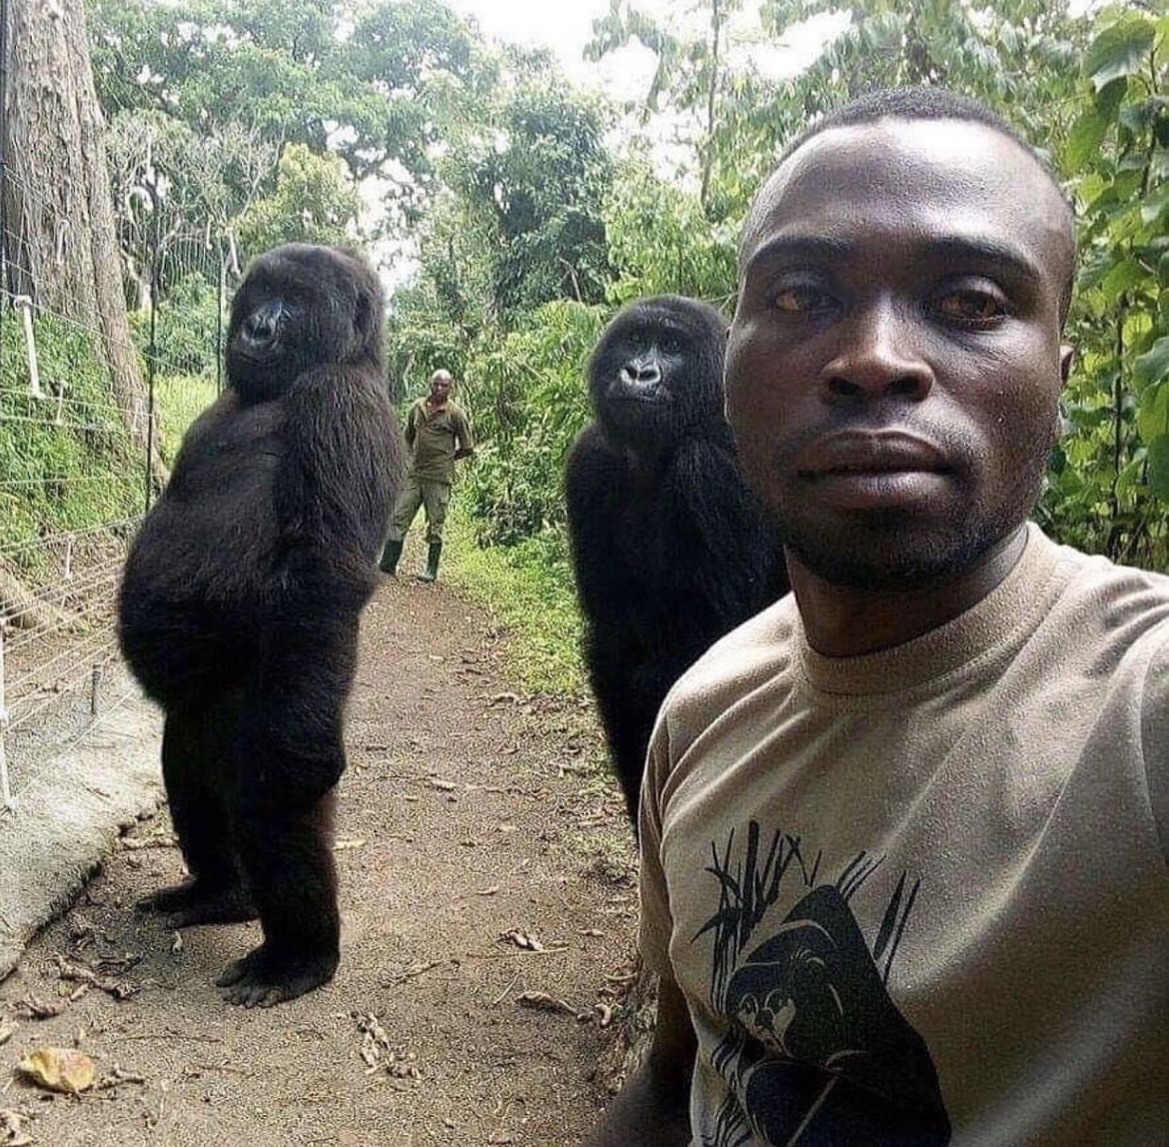 Gorillas posing with anti-poaching rangers in Virunga National Park, Congo, 2019. Workman's tumblr.